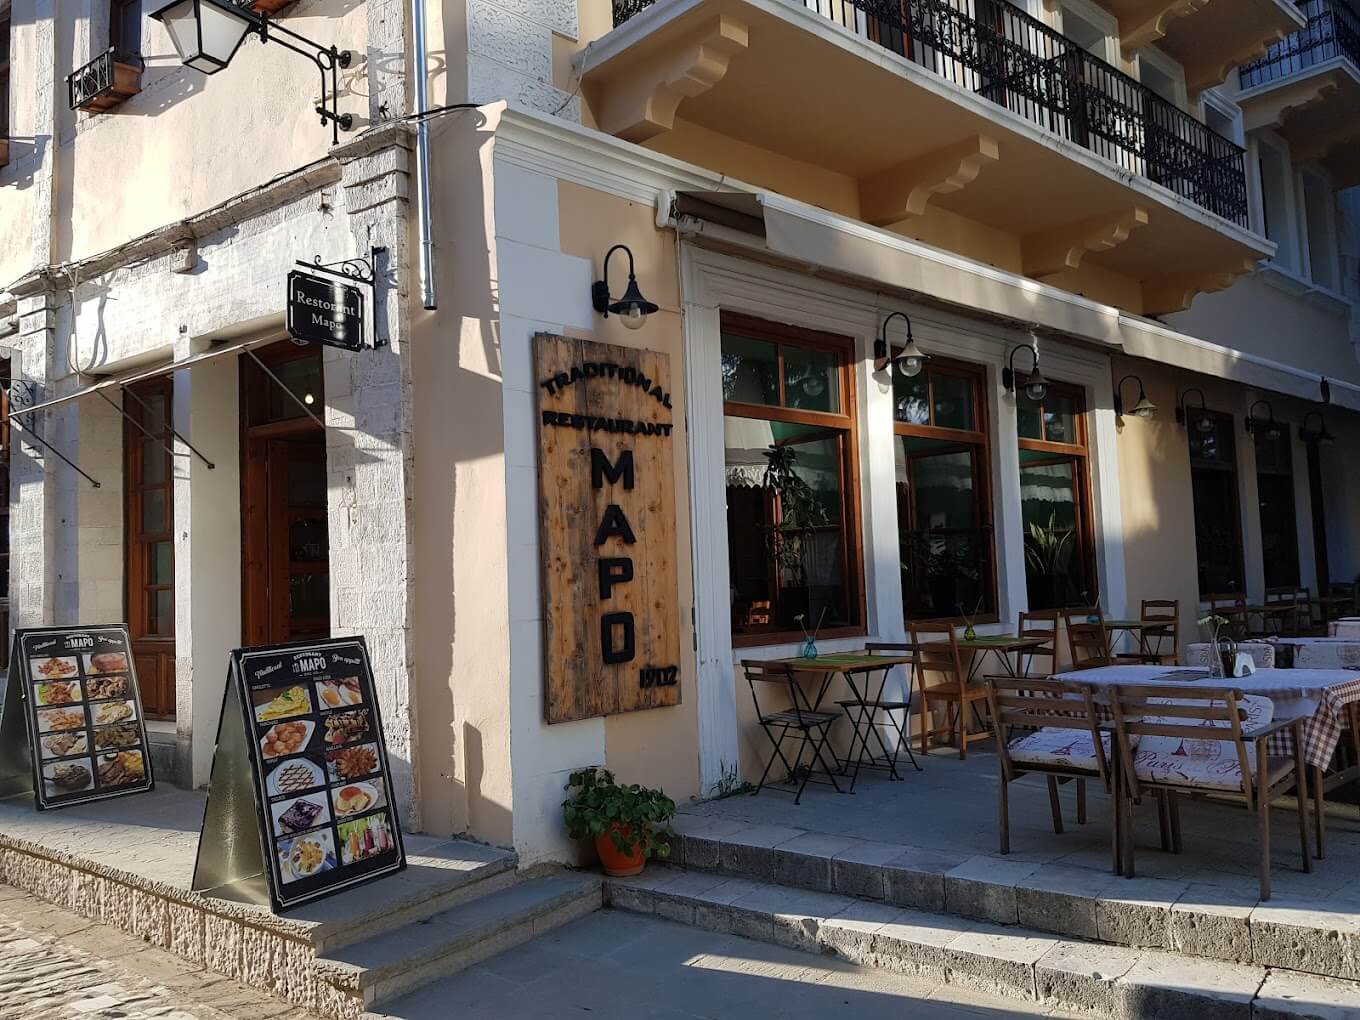 Mapo është një restorant familjar i cili ndodhet në sheshin kryesor të qytetit të vjetër. Ky vend i ngrohtë dhe mikpritës ofron një përvojë unike kulinare, duke kombinuar modernitetin me traditën në një atmosferë të këndshme dhe relaksuese.